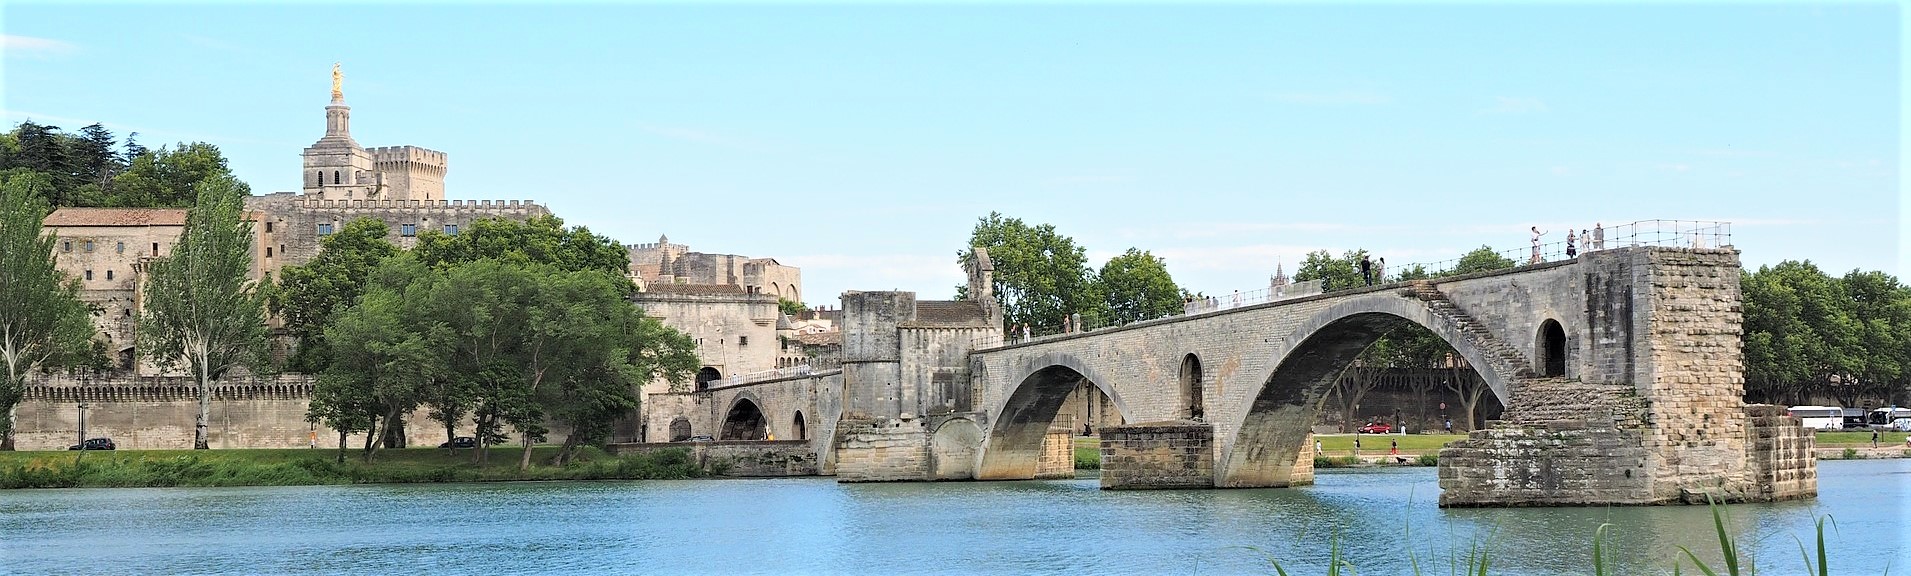 Avignon REPORT|アヴィニョン 視察ブログ